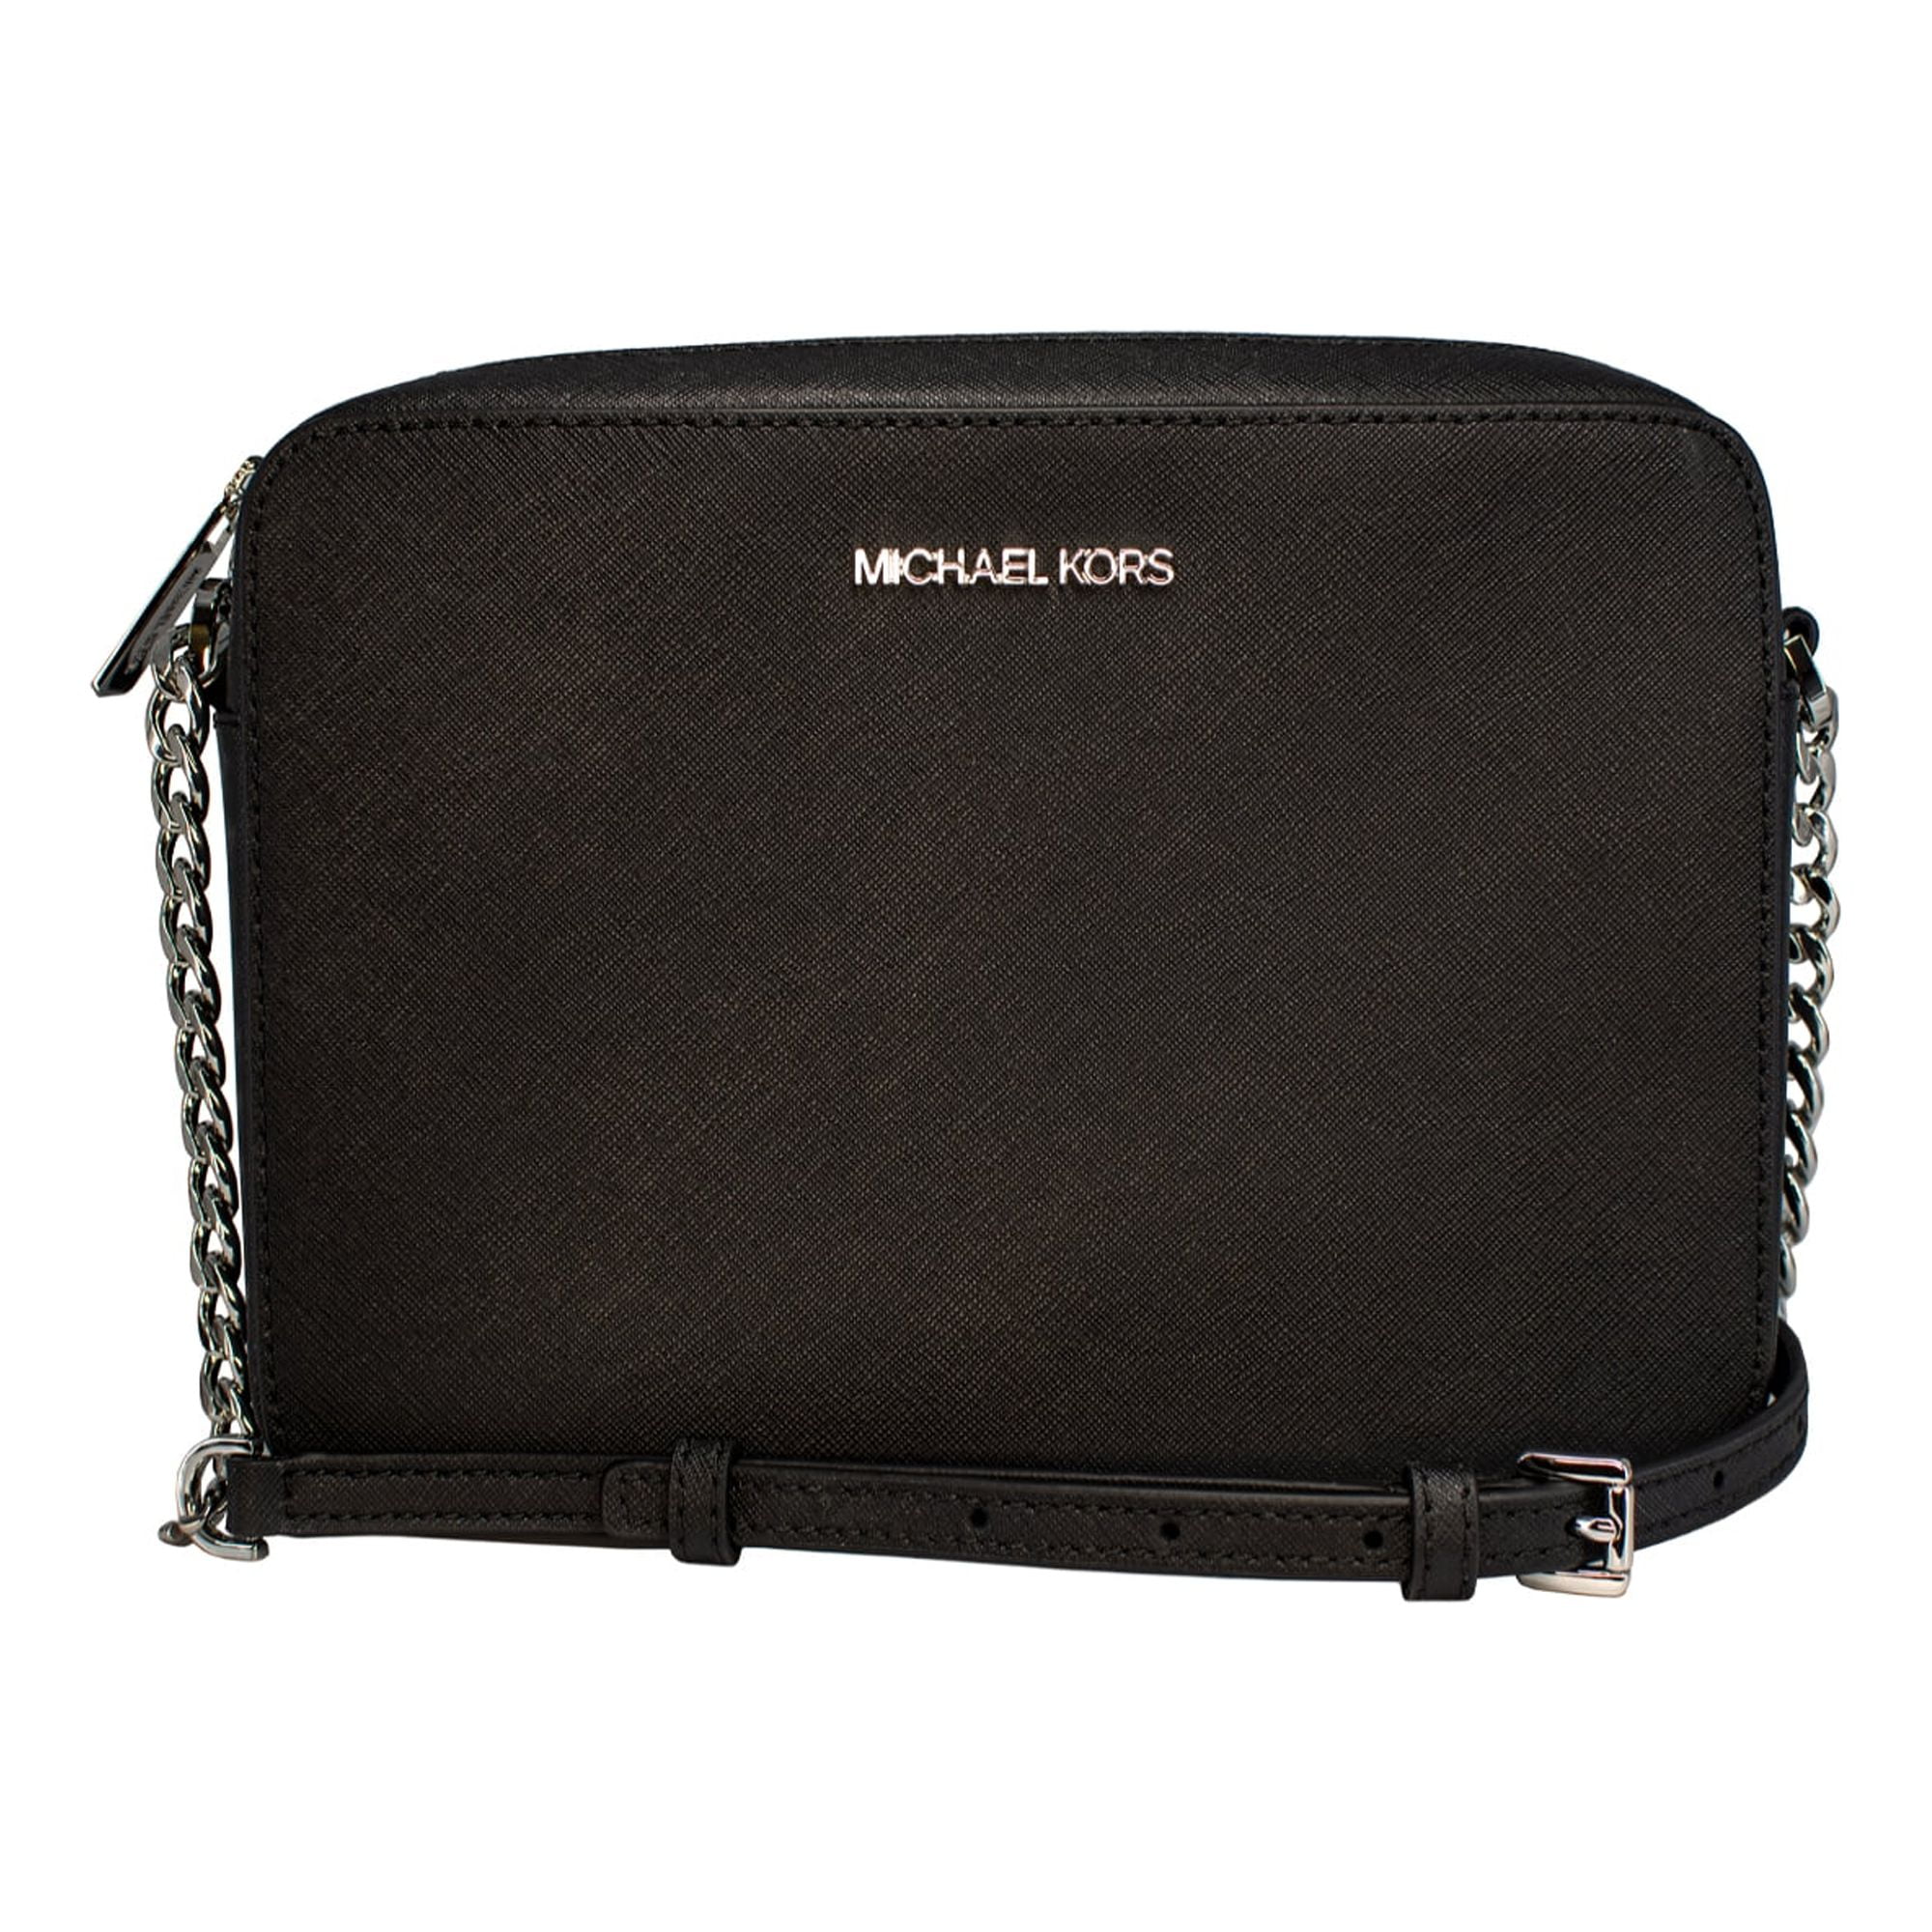 Michael Kors, Jet Set Large East West Saffiano Leather Crossbody Bag  Handbag Black Solid/Gold Hardware